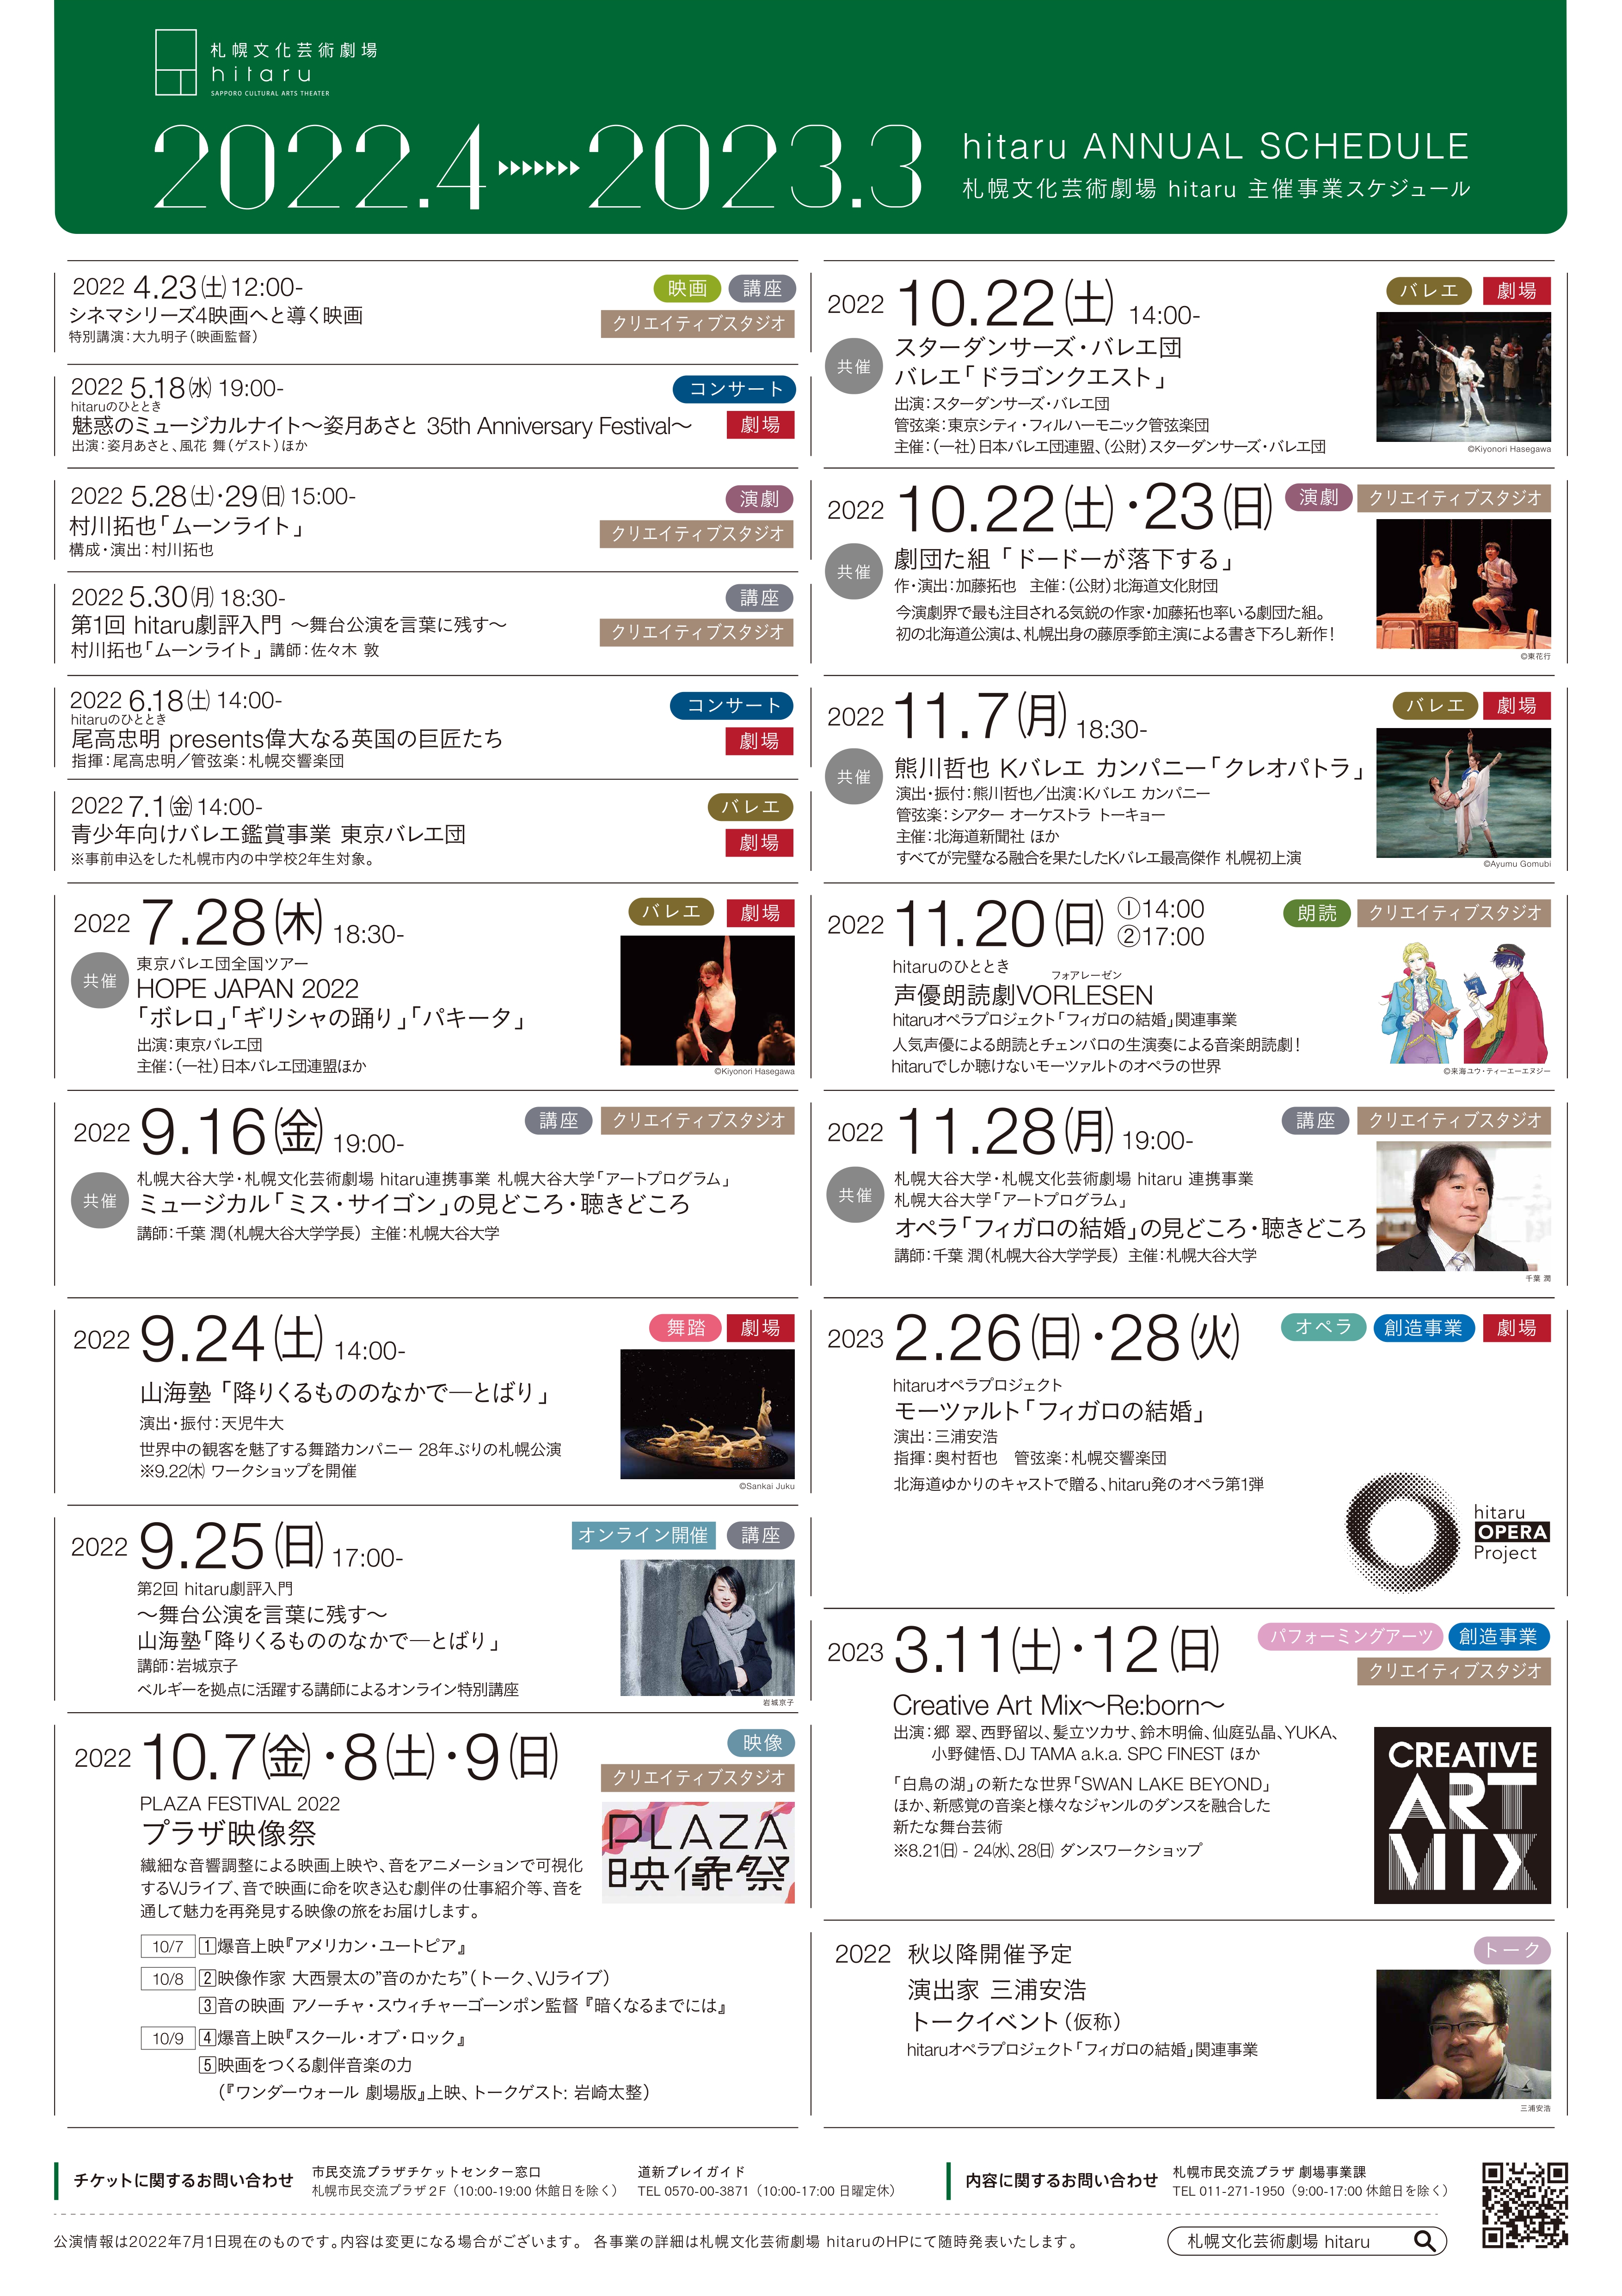 2022年度札幌文化芸術劇場 hitaru主催事業ラインナップ【更新】 イメージ